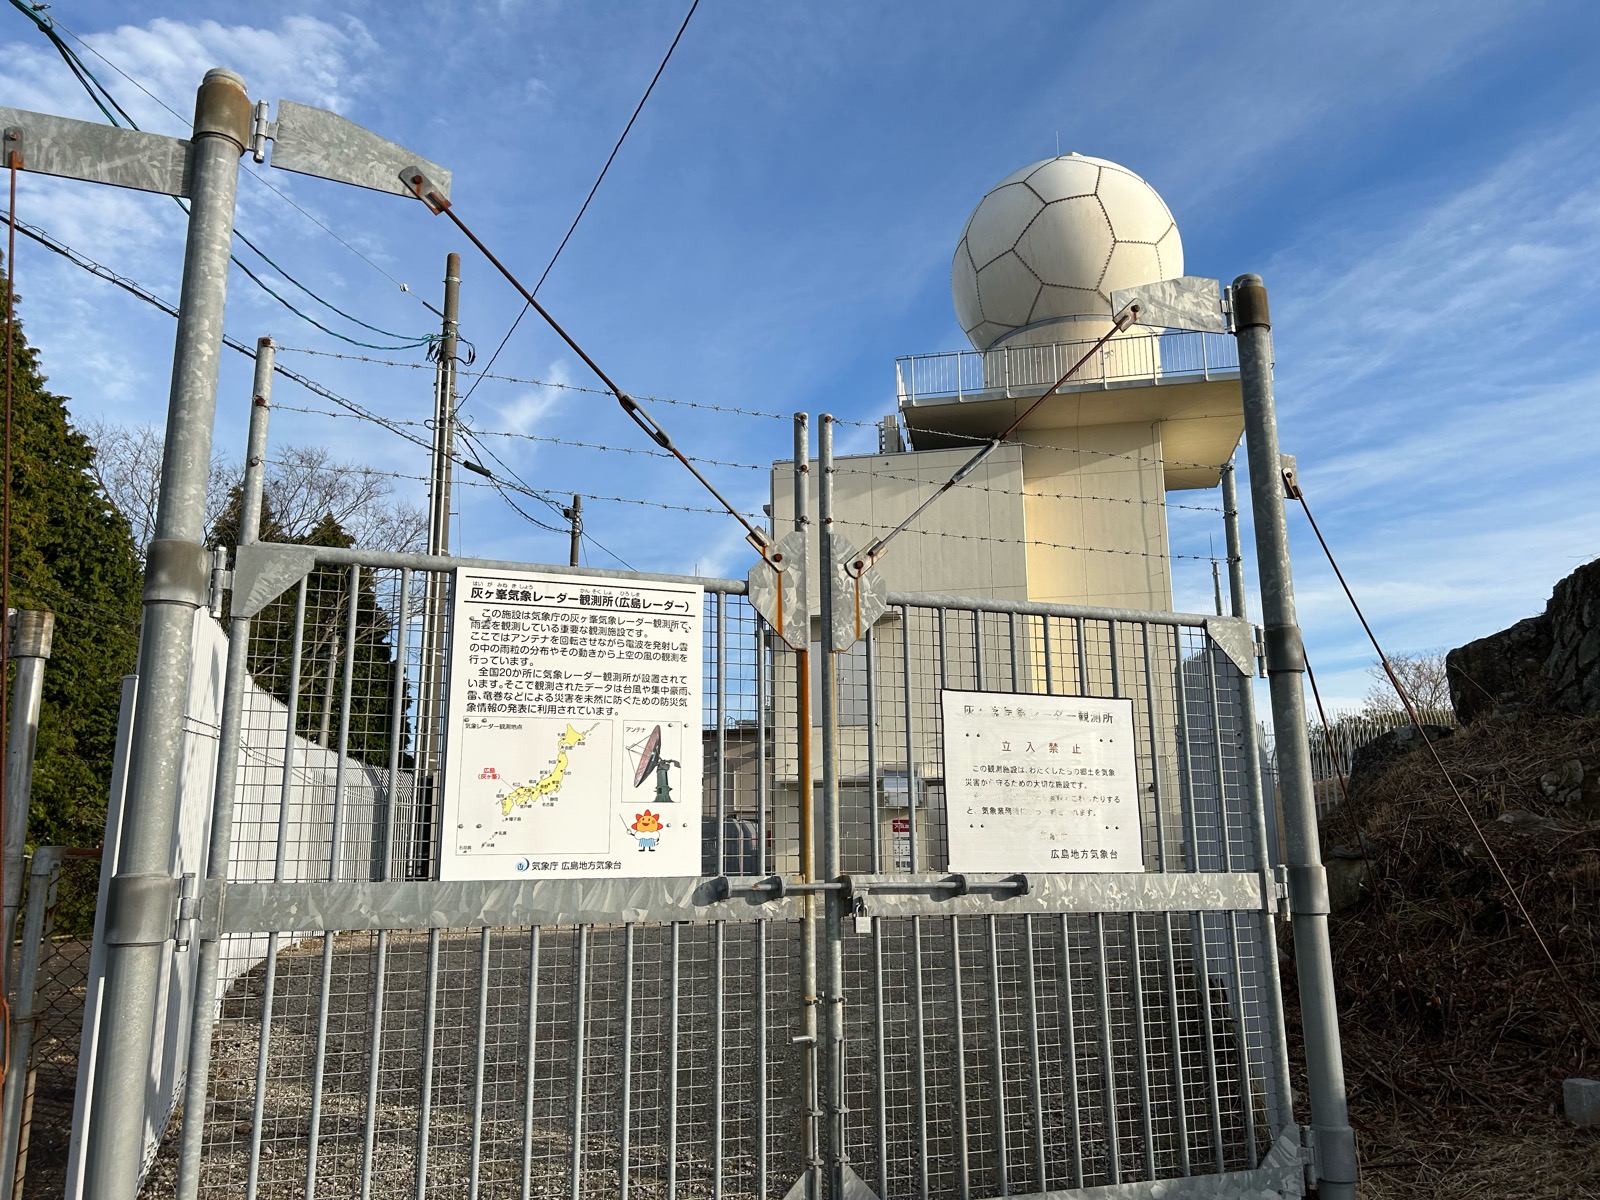 灰ヶ峰展望台 気象レーダー観測所(広島レーダー)